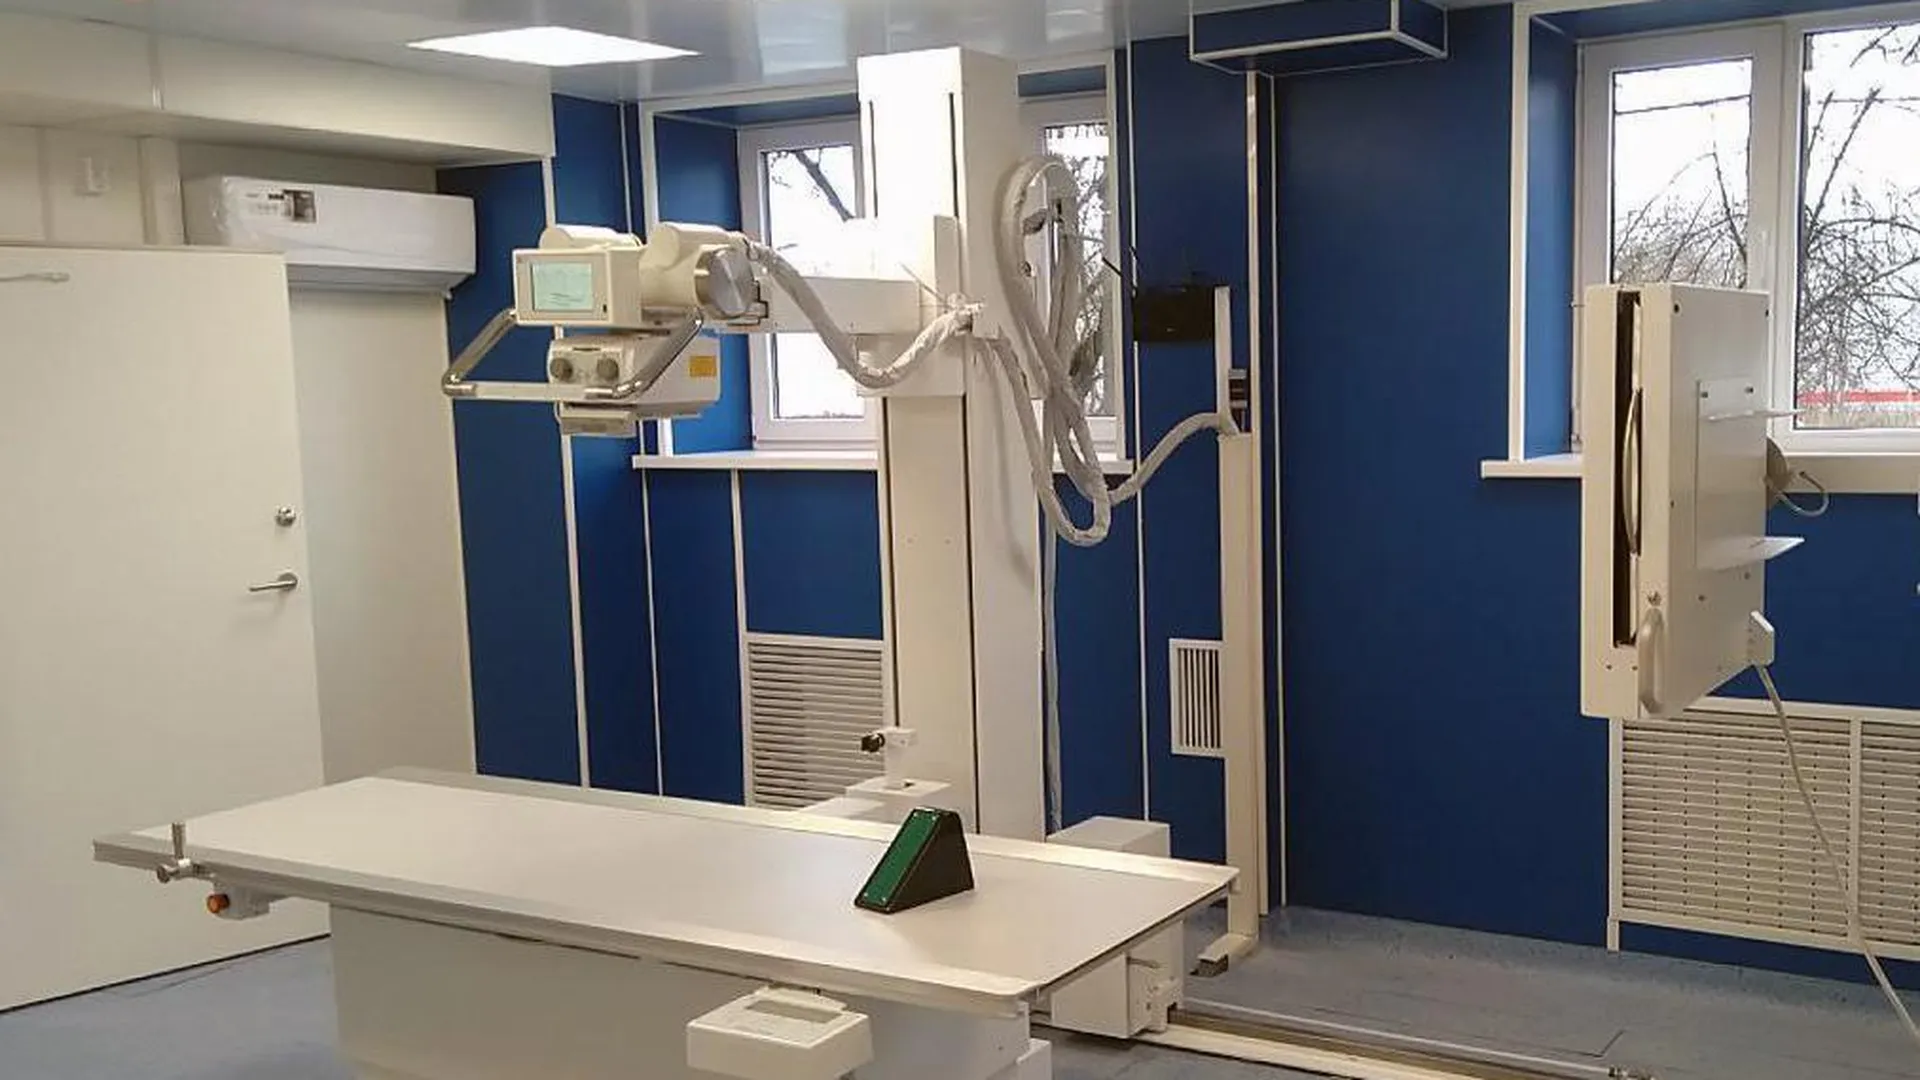 Поликлинику подмосковного Долгопрудного оснастили современными рентген-аппаратами